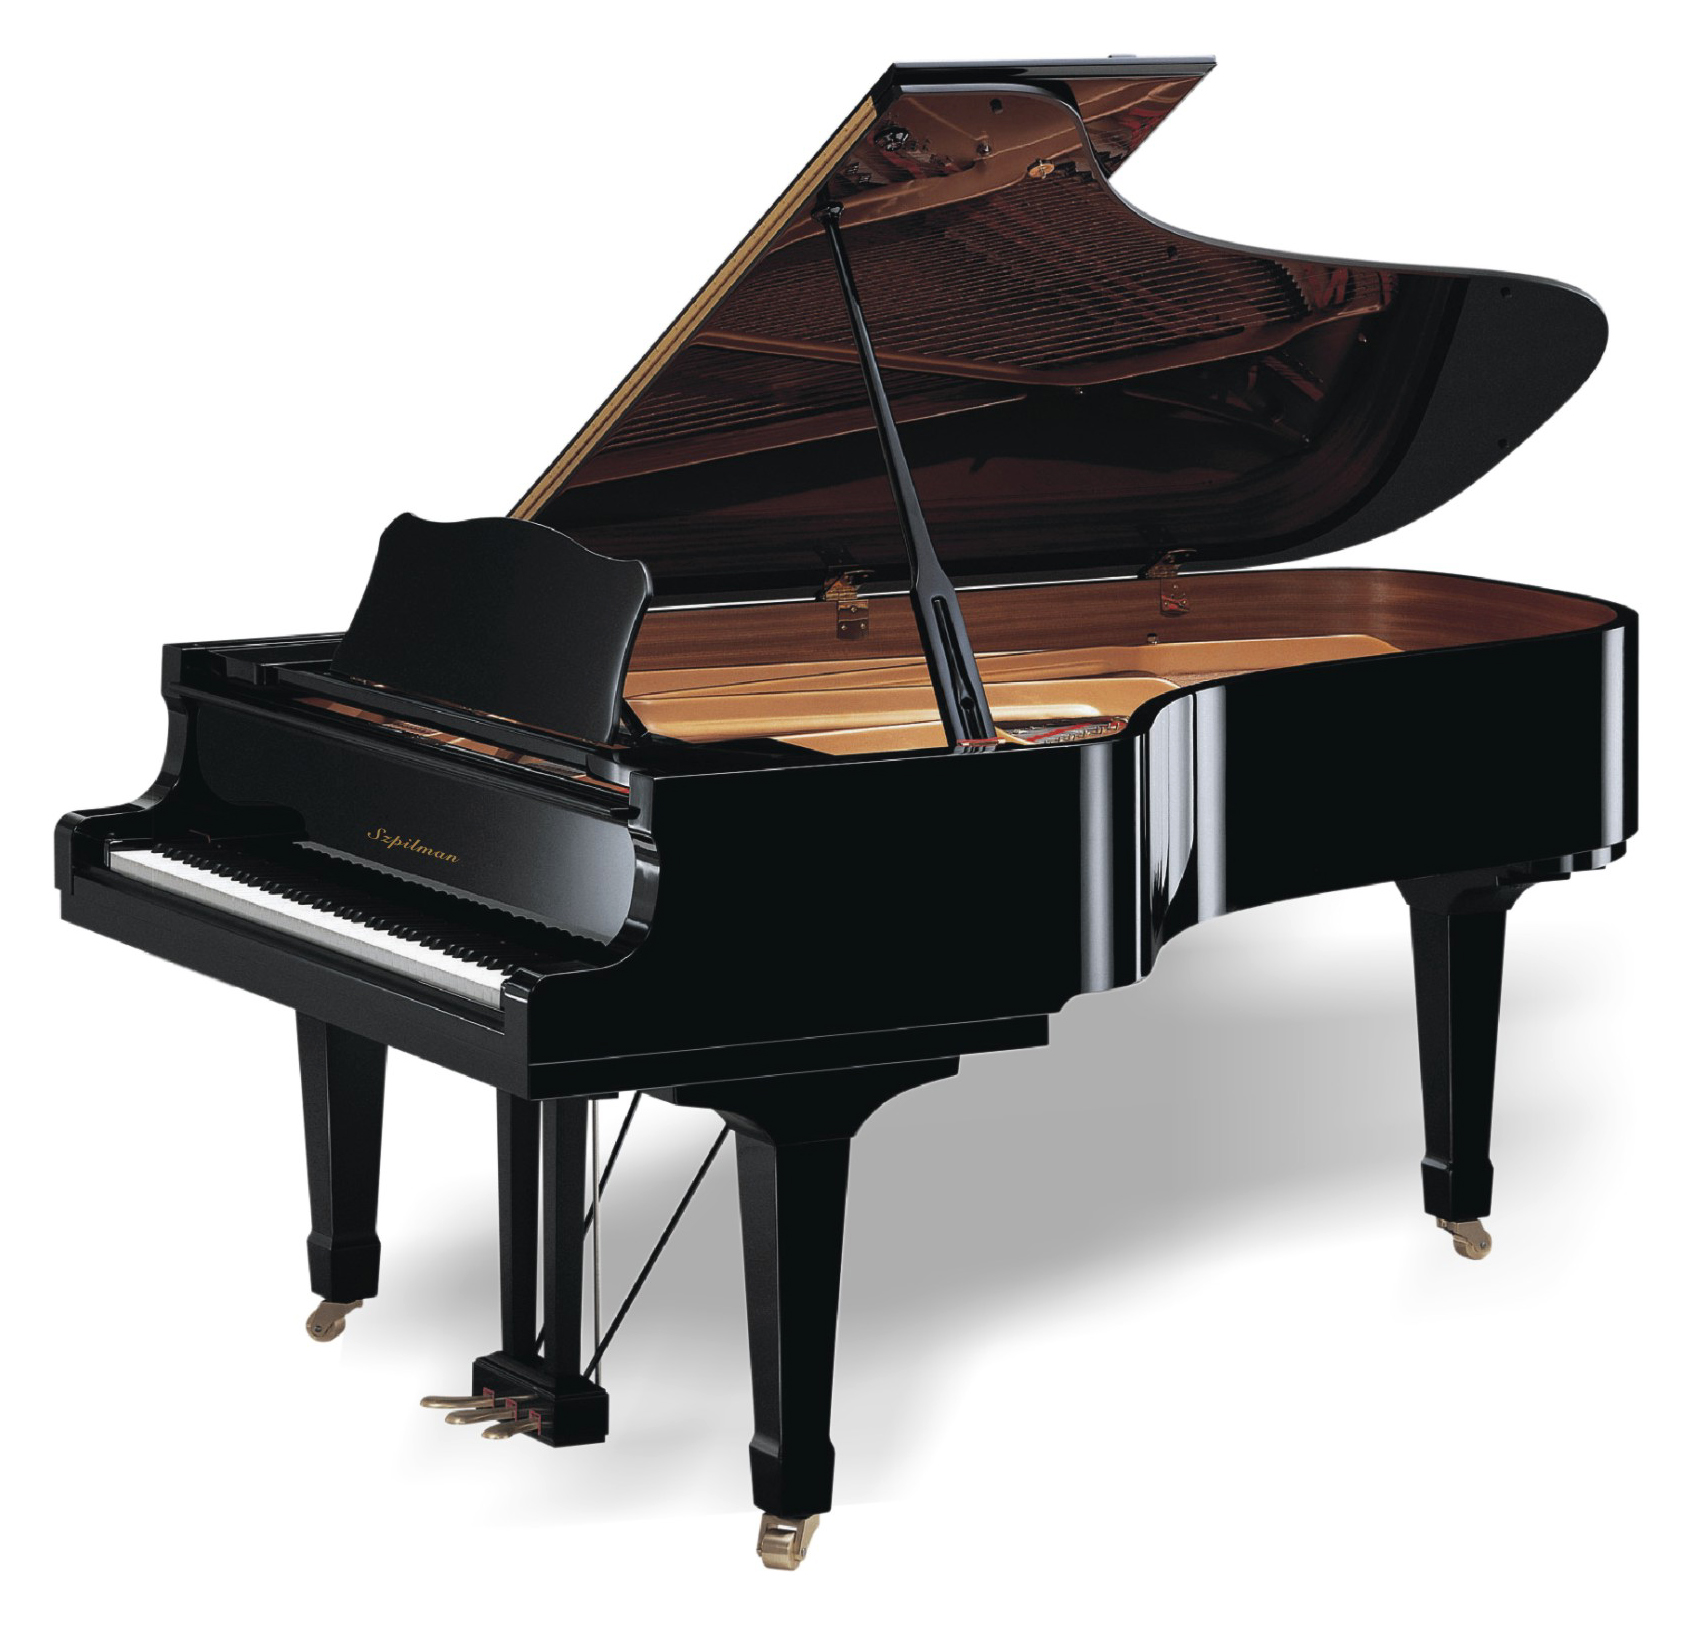 全新国产家用三角钢琴gp-152黑色亮光卡纳尔钢琴